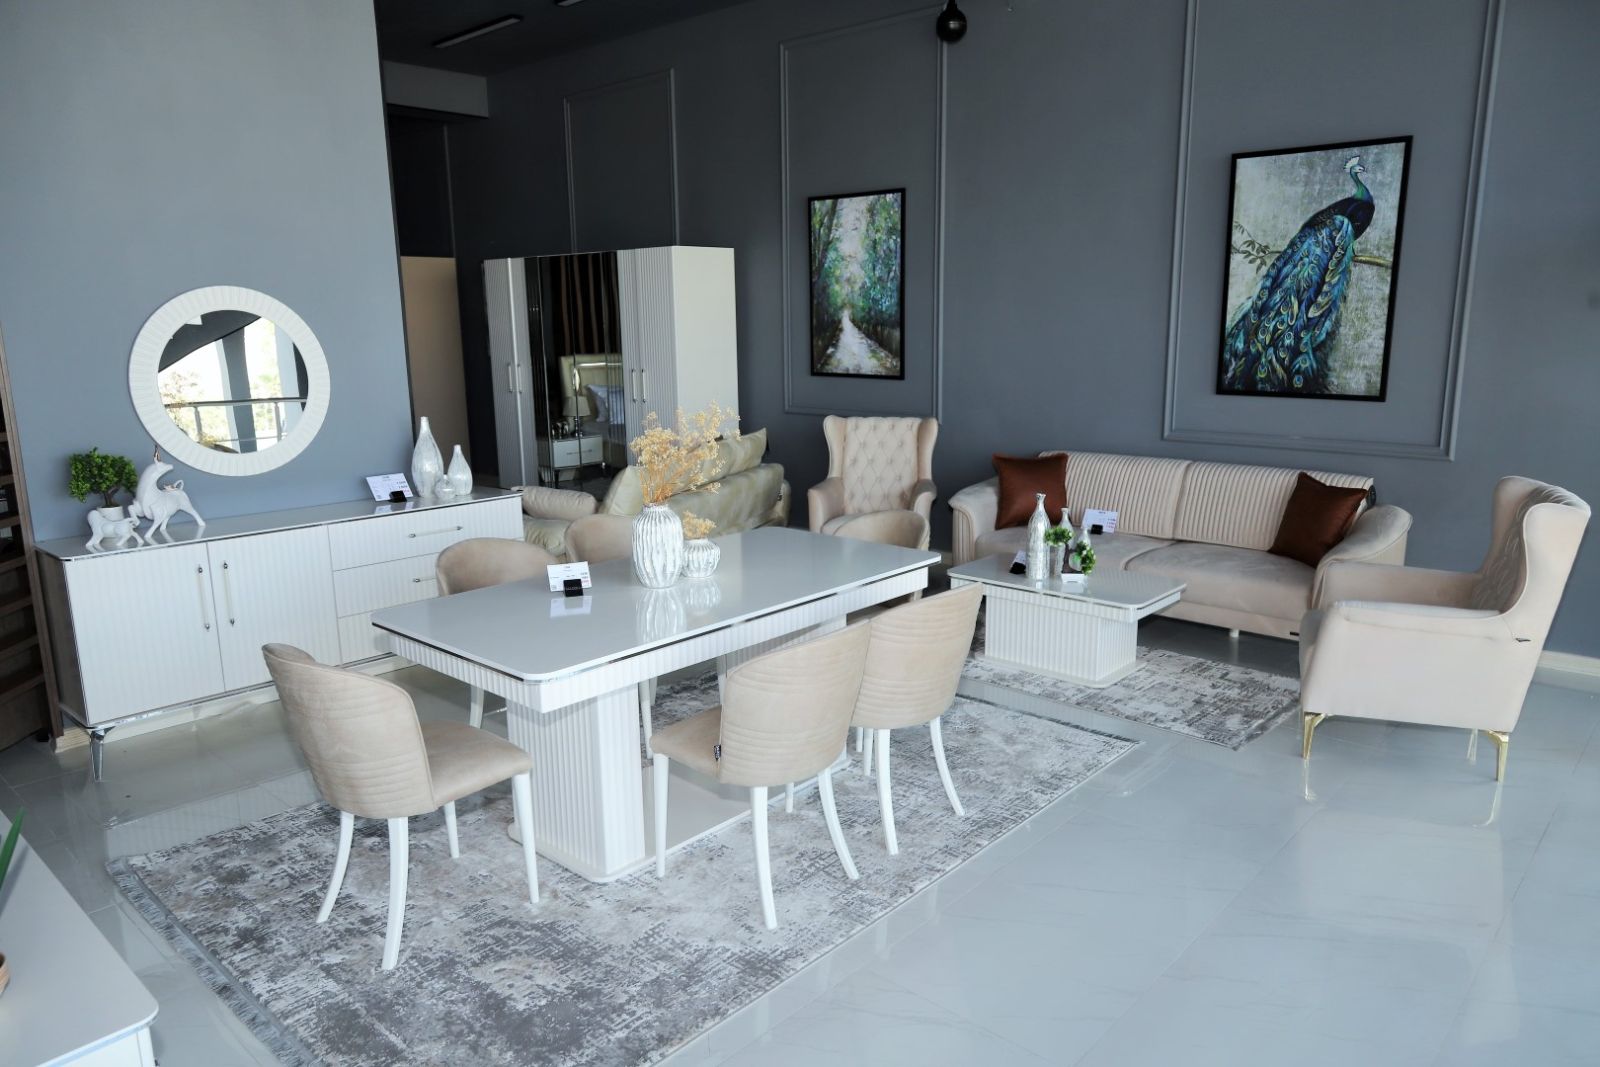 Магазин мебели Saloglu официально открылся в городе Барда - ФОТО - ВИДЕО